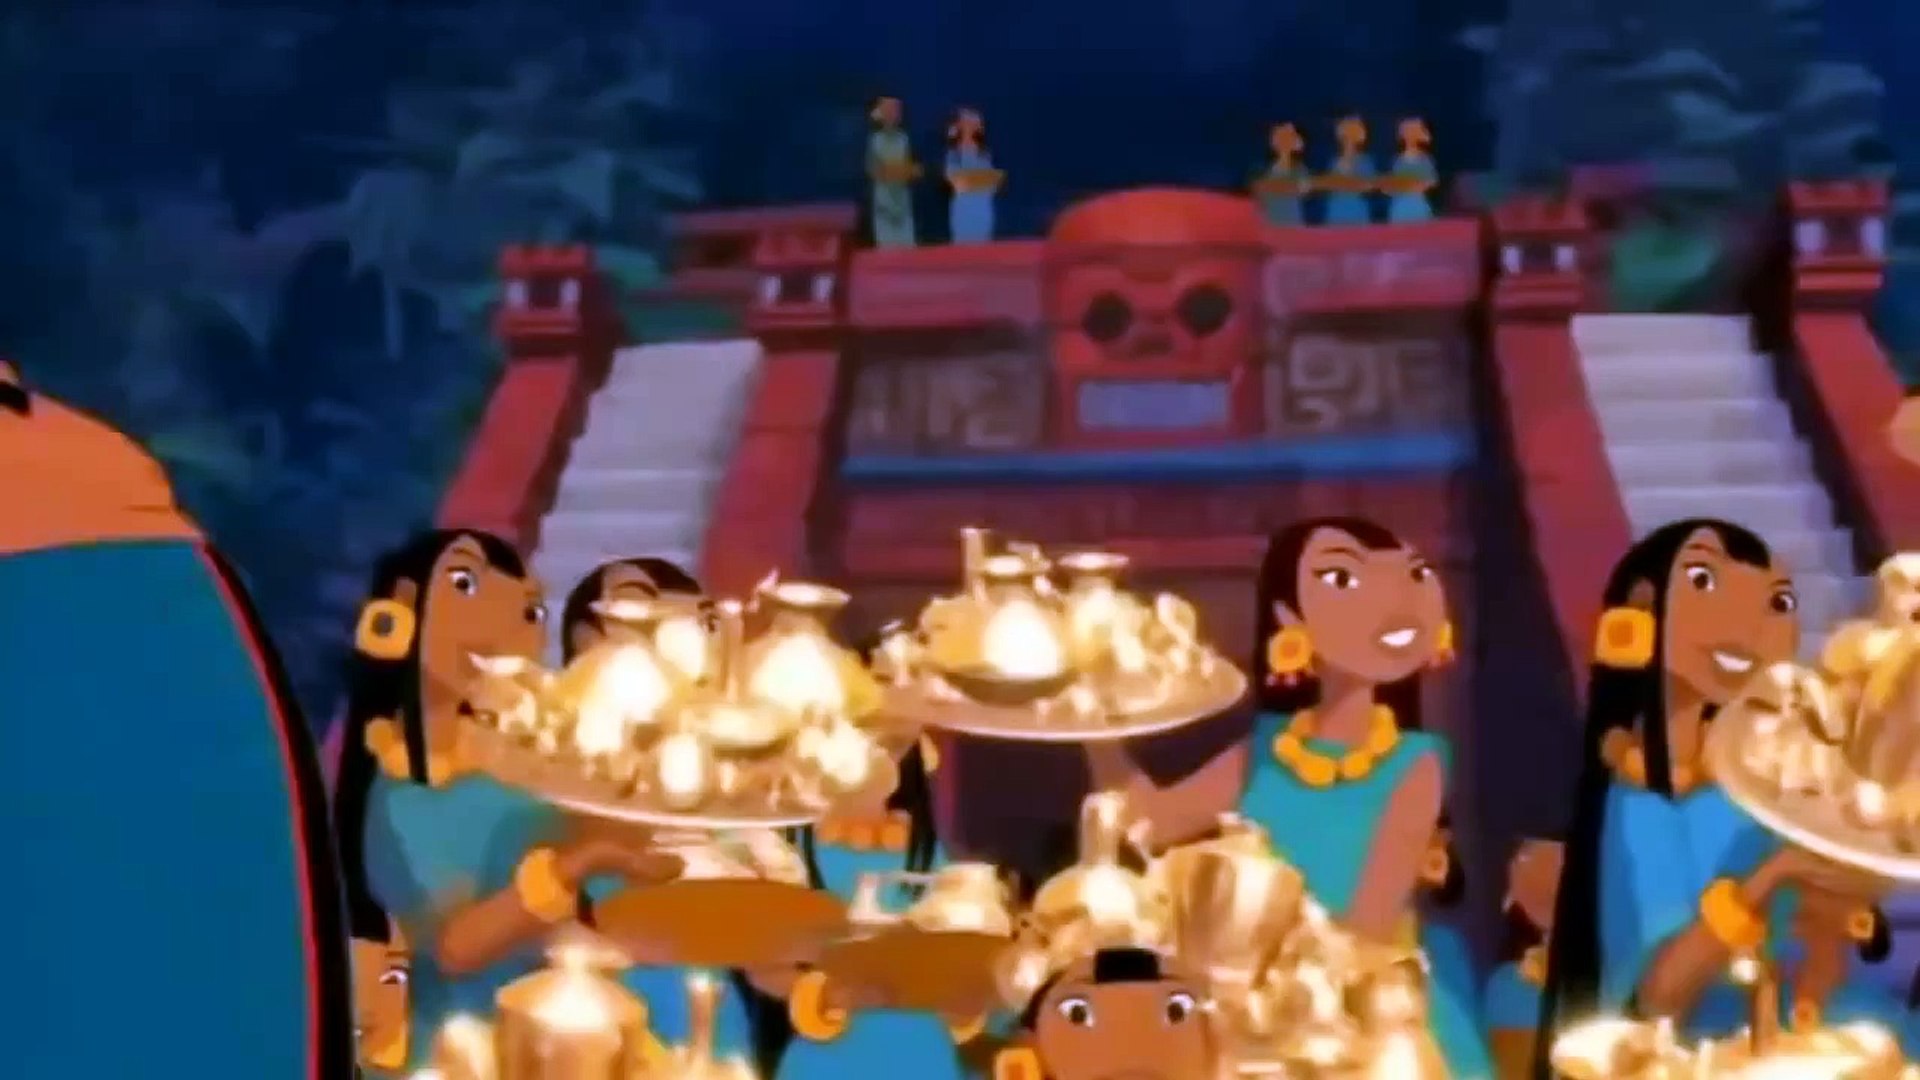 The Road To El Dorado Cartoon Disney Comedy Movies Video